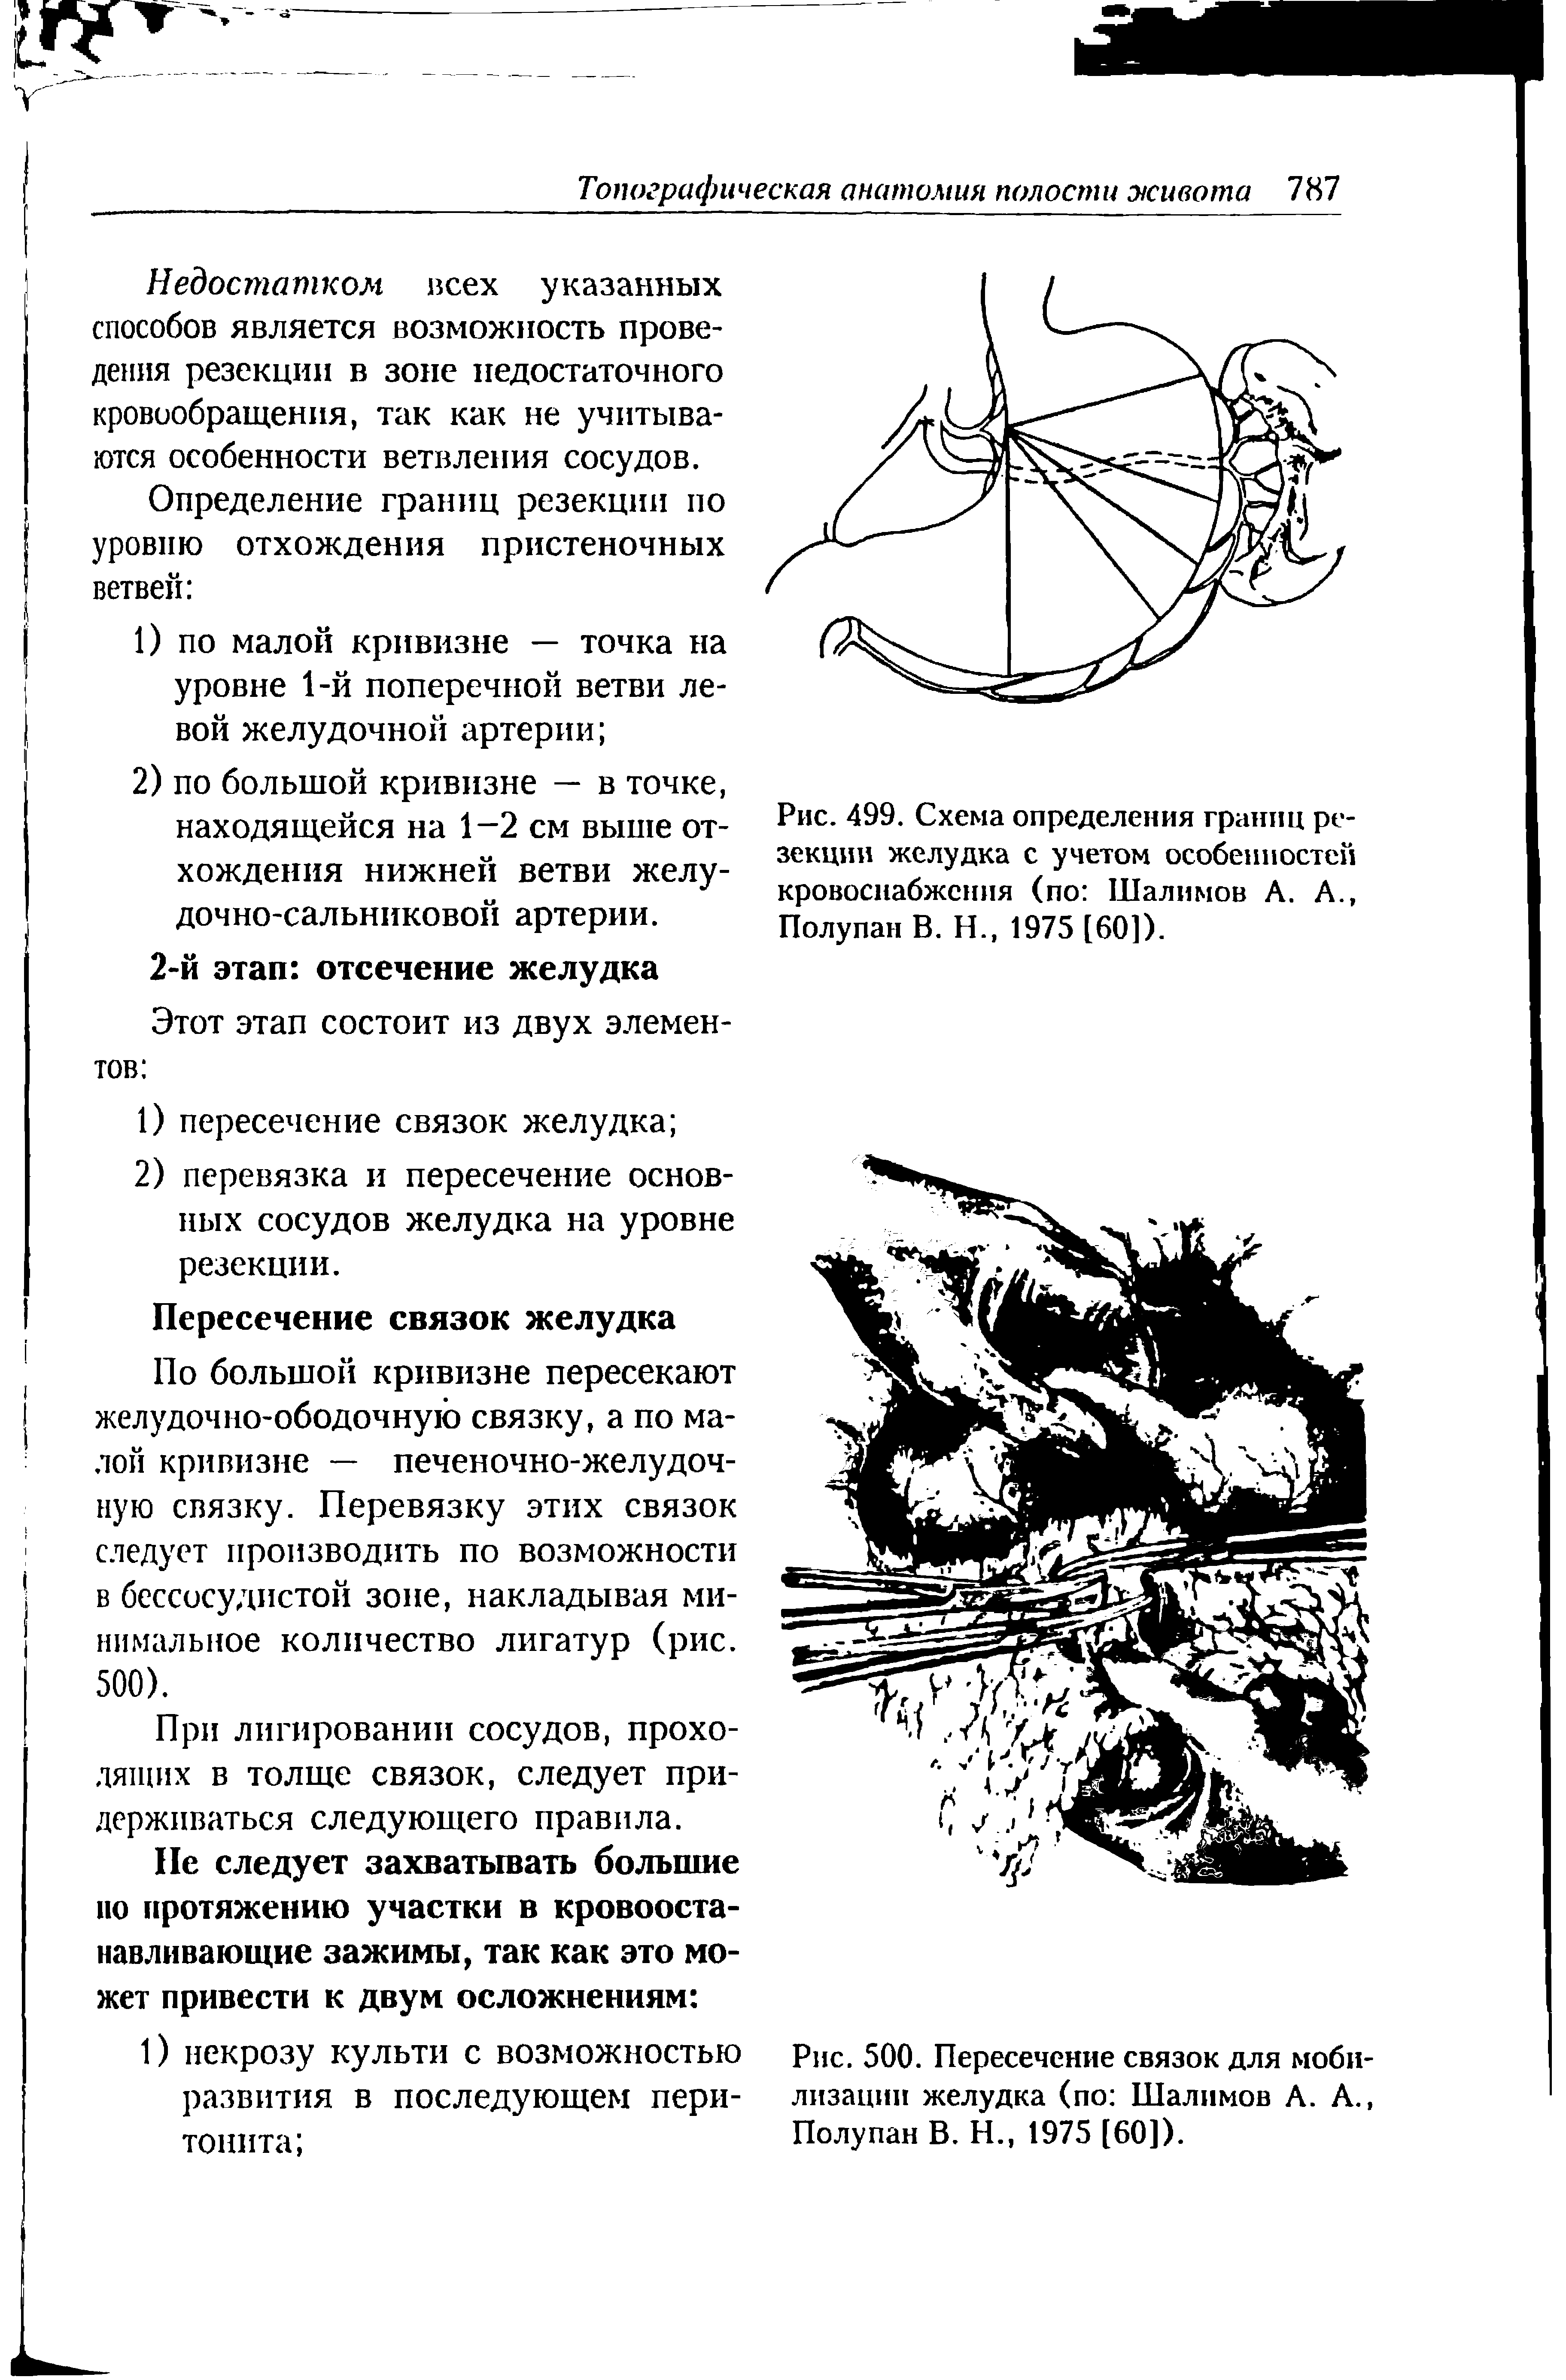 Рис. 500. Пересечение связок для мобилизации желудка (по Шалимов А. А., Полупан В. Н., 1975 [60]).